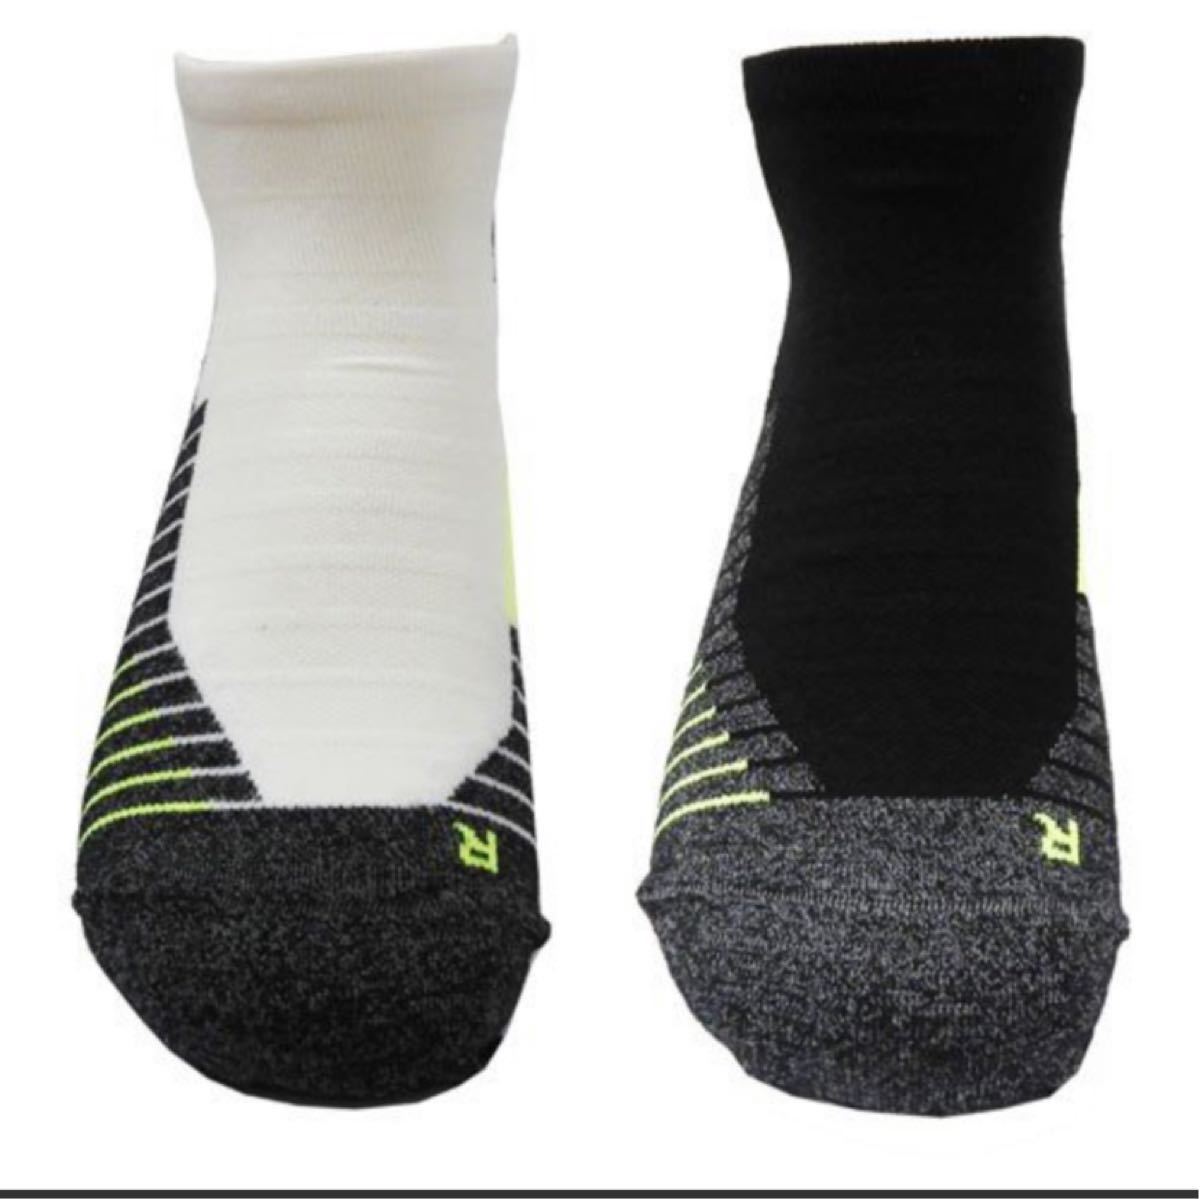 新品タグ付き未使用アンダーアーマー靴下ソックスランニング用アスリートLG 2足組みセット即購入してください。